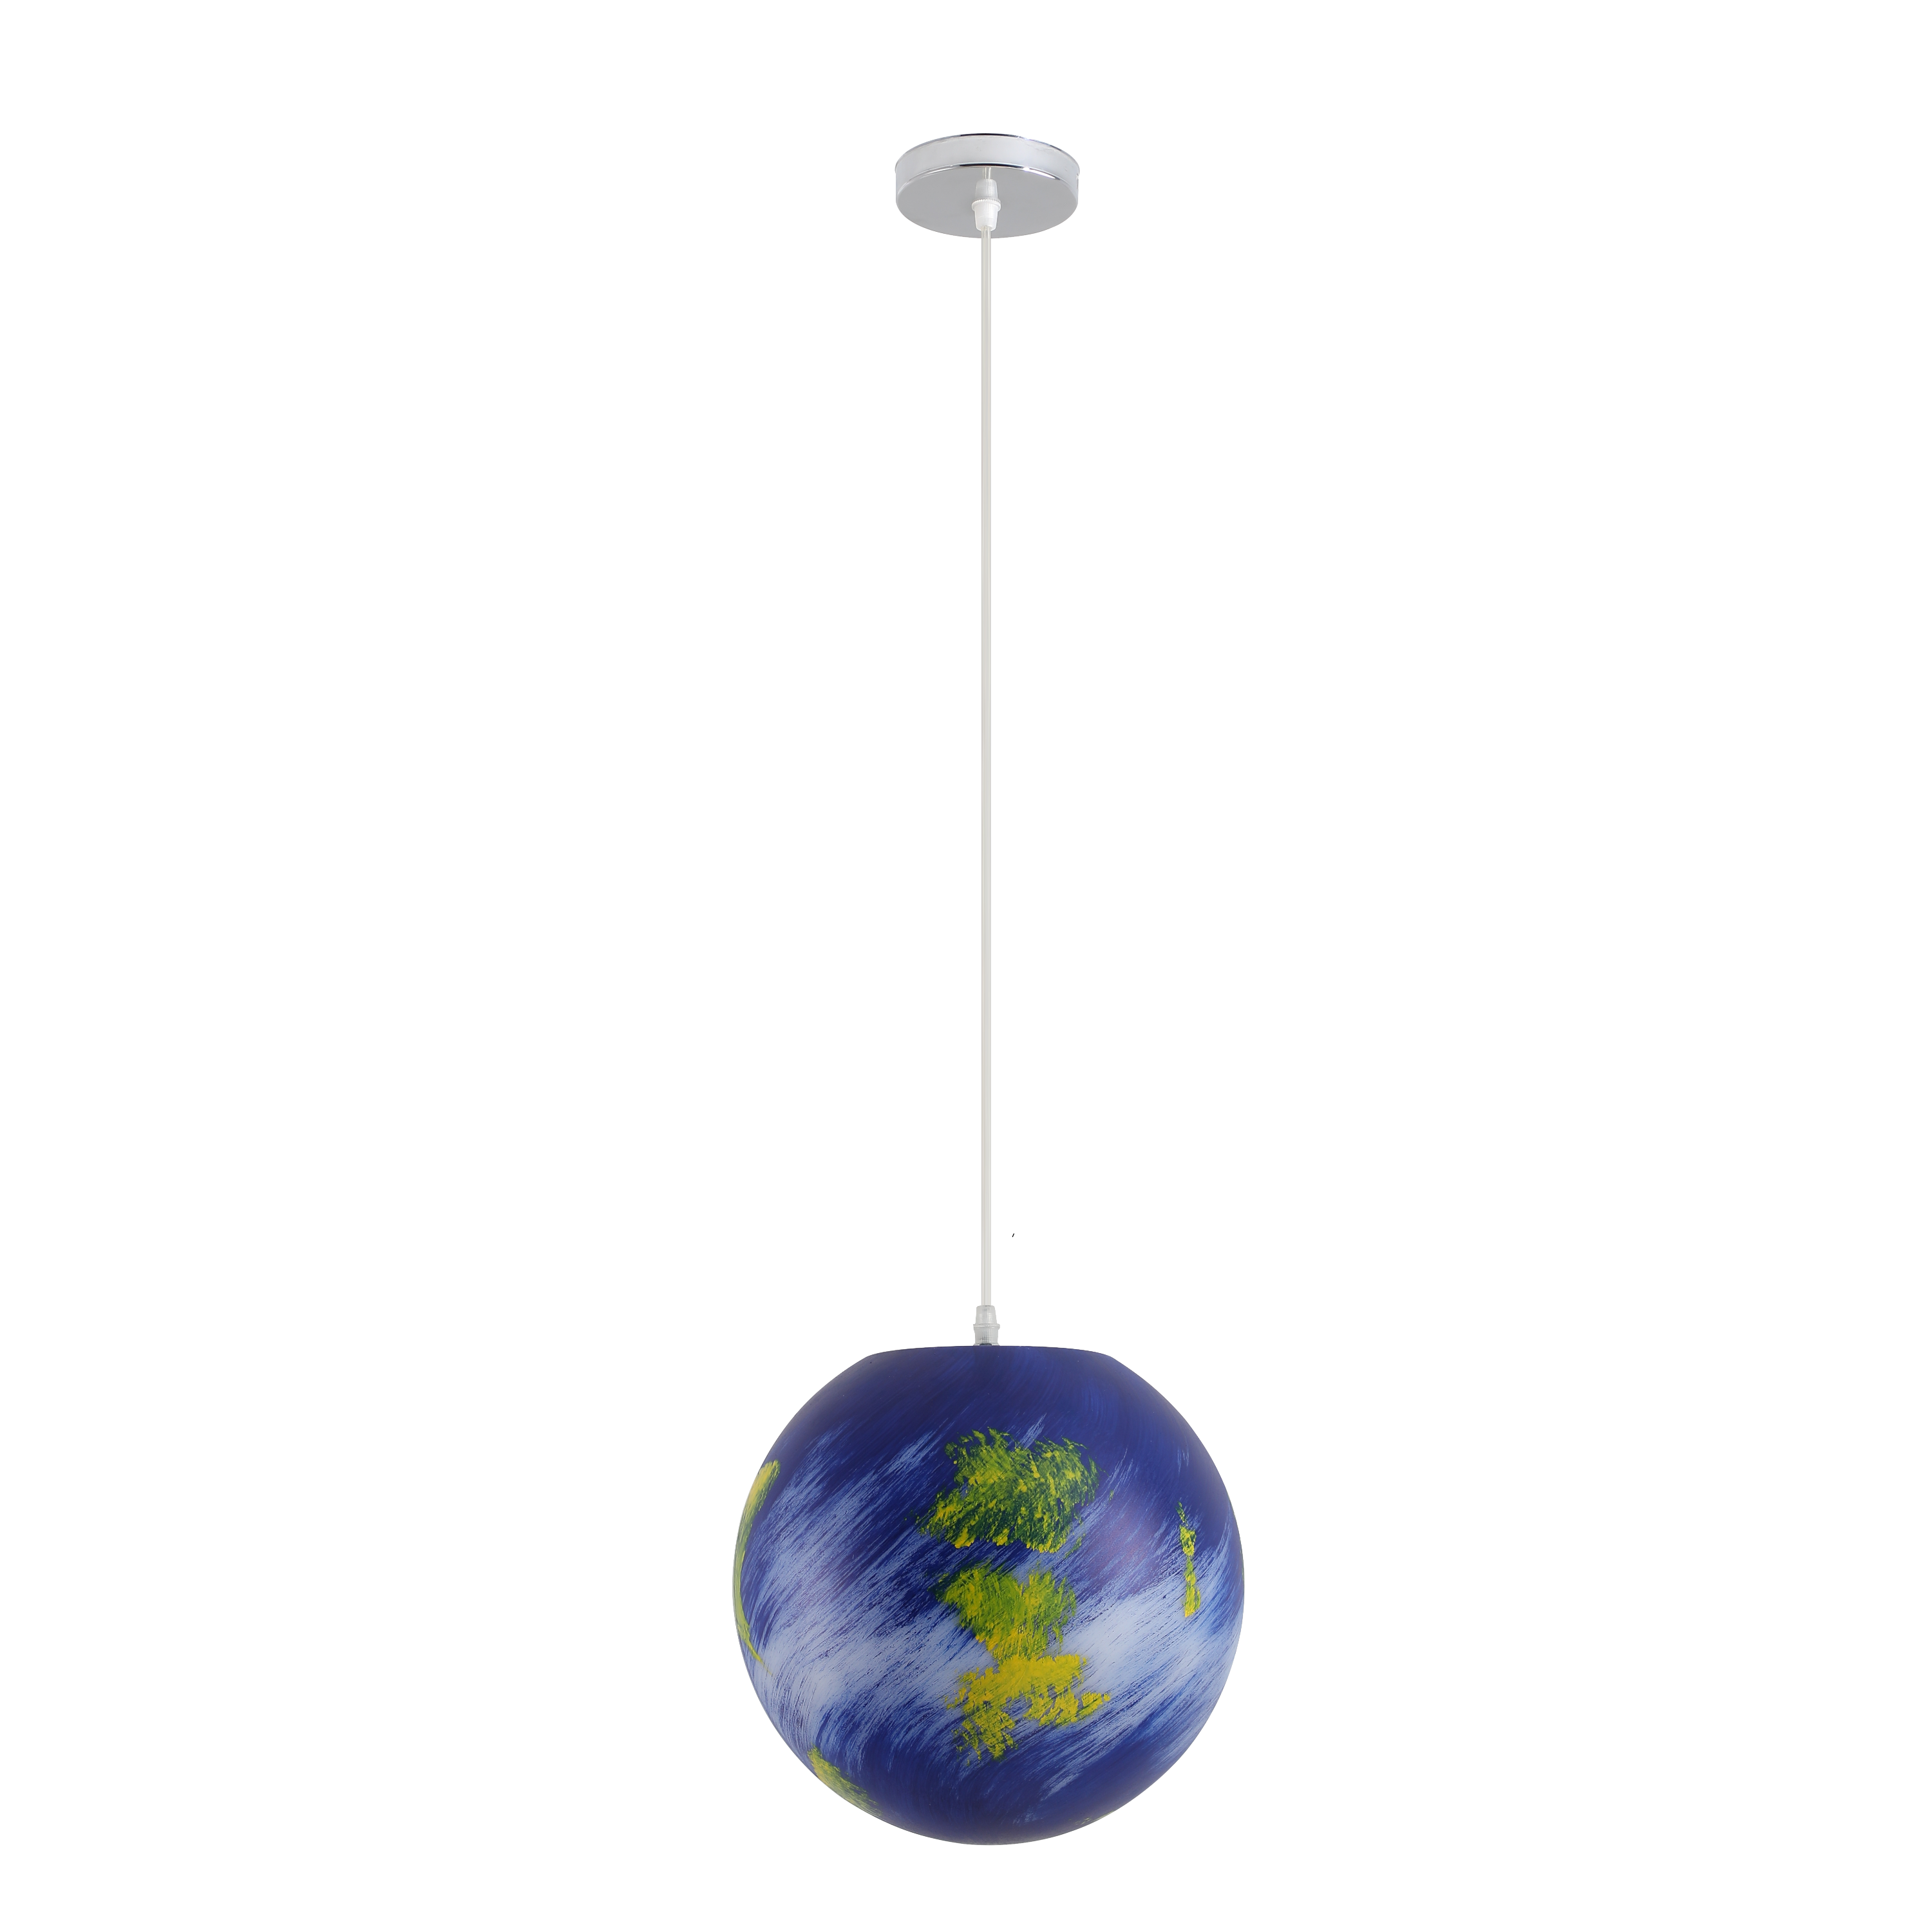 Planet decorative chandeliers